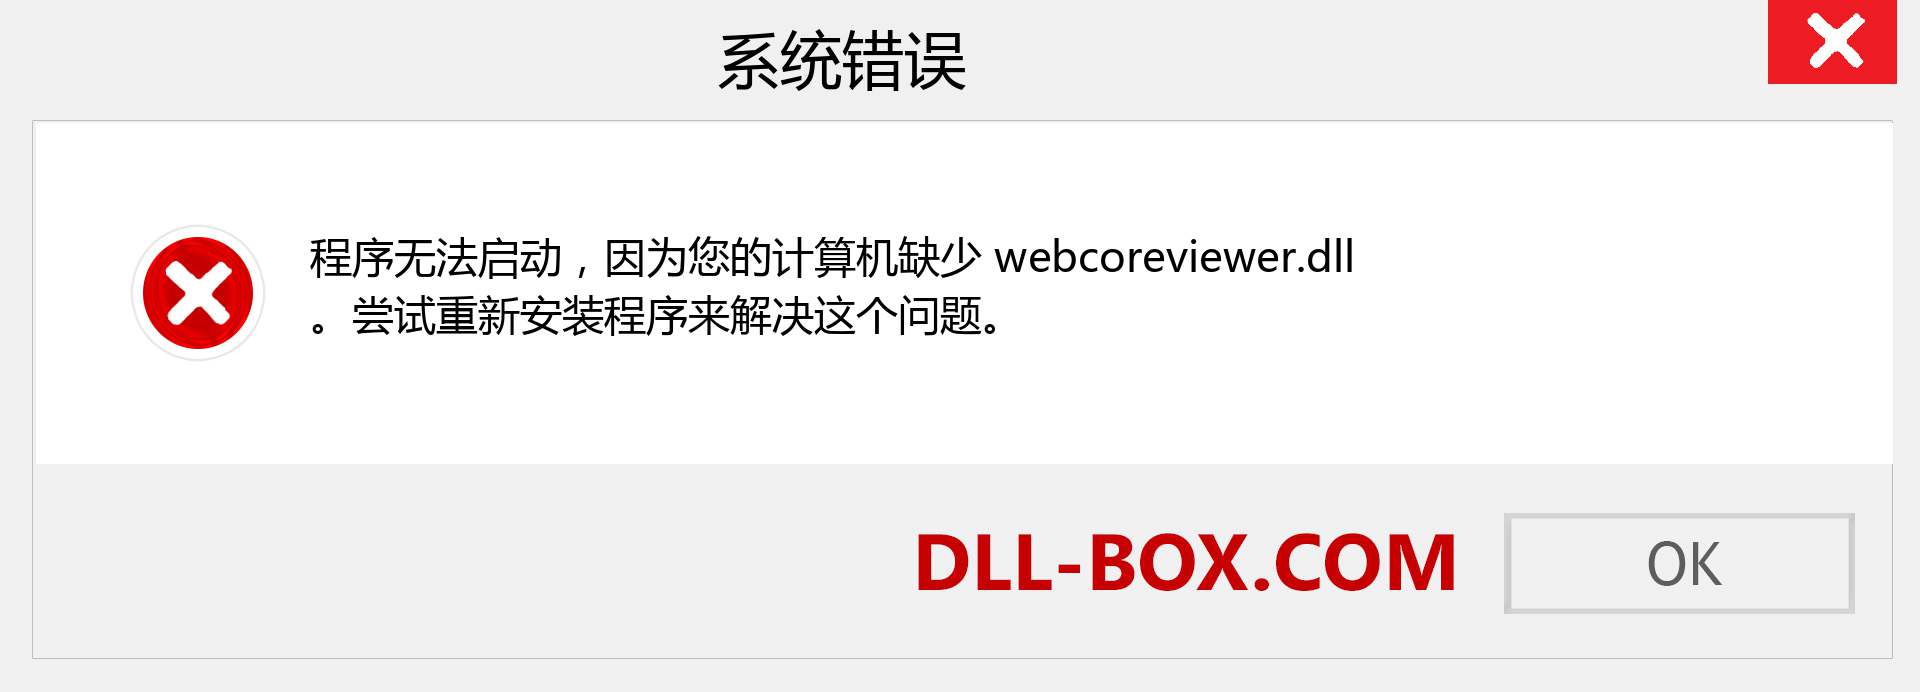 webcoreviewer.dll 文件丢失？。 适用于 Windows 7、8、10 的下载 - 修复 Windows、照片、图像上的 webcoreviewer dll 丢失错误